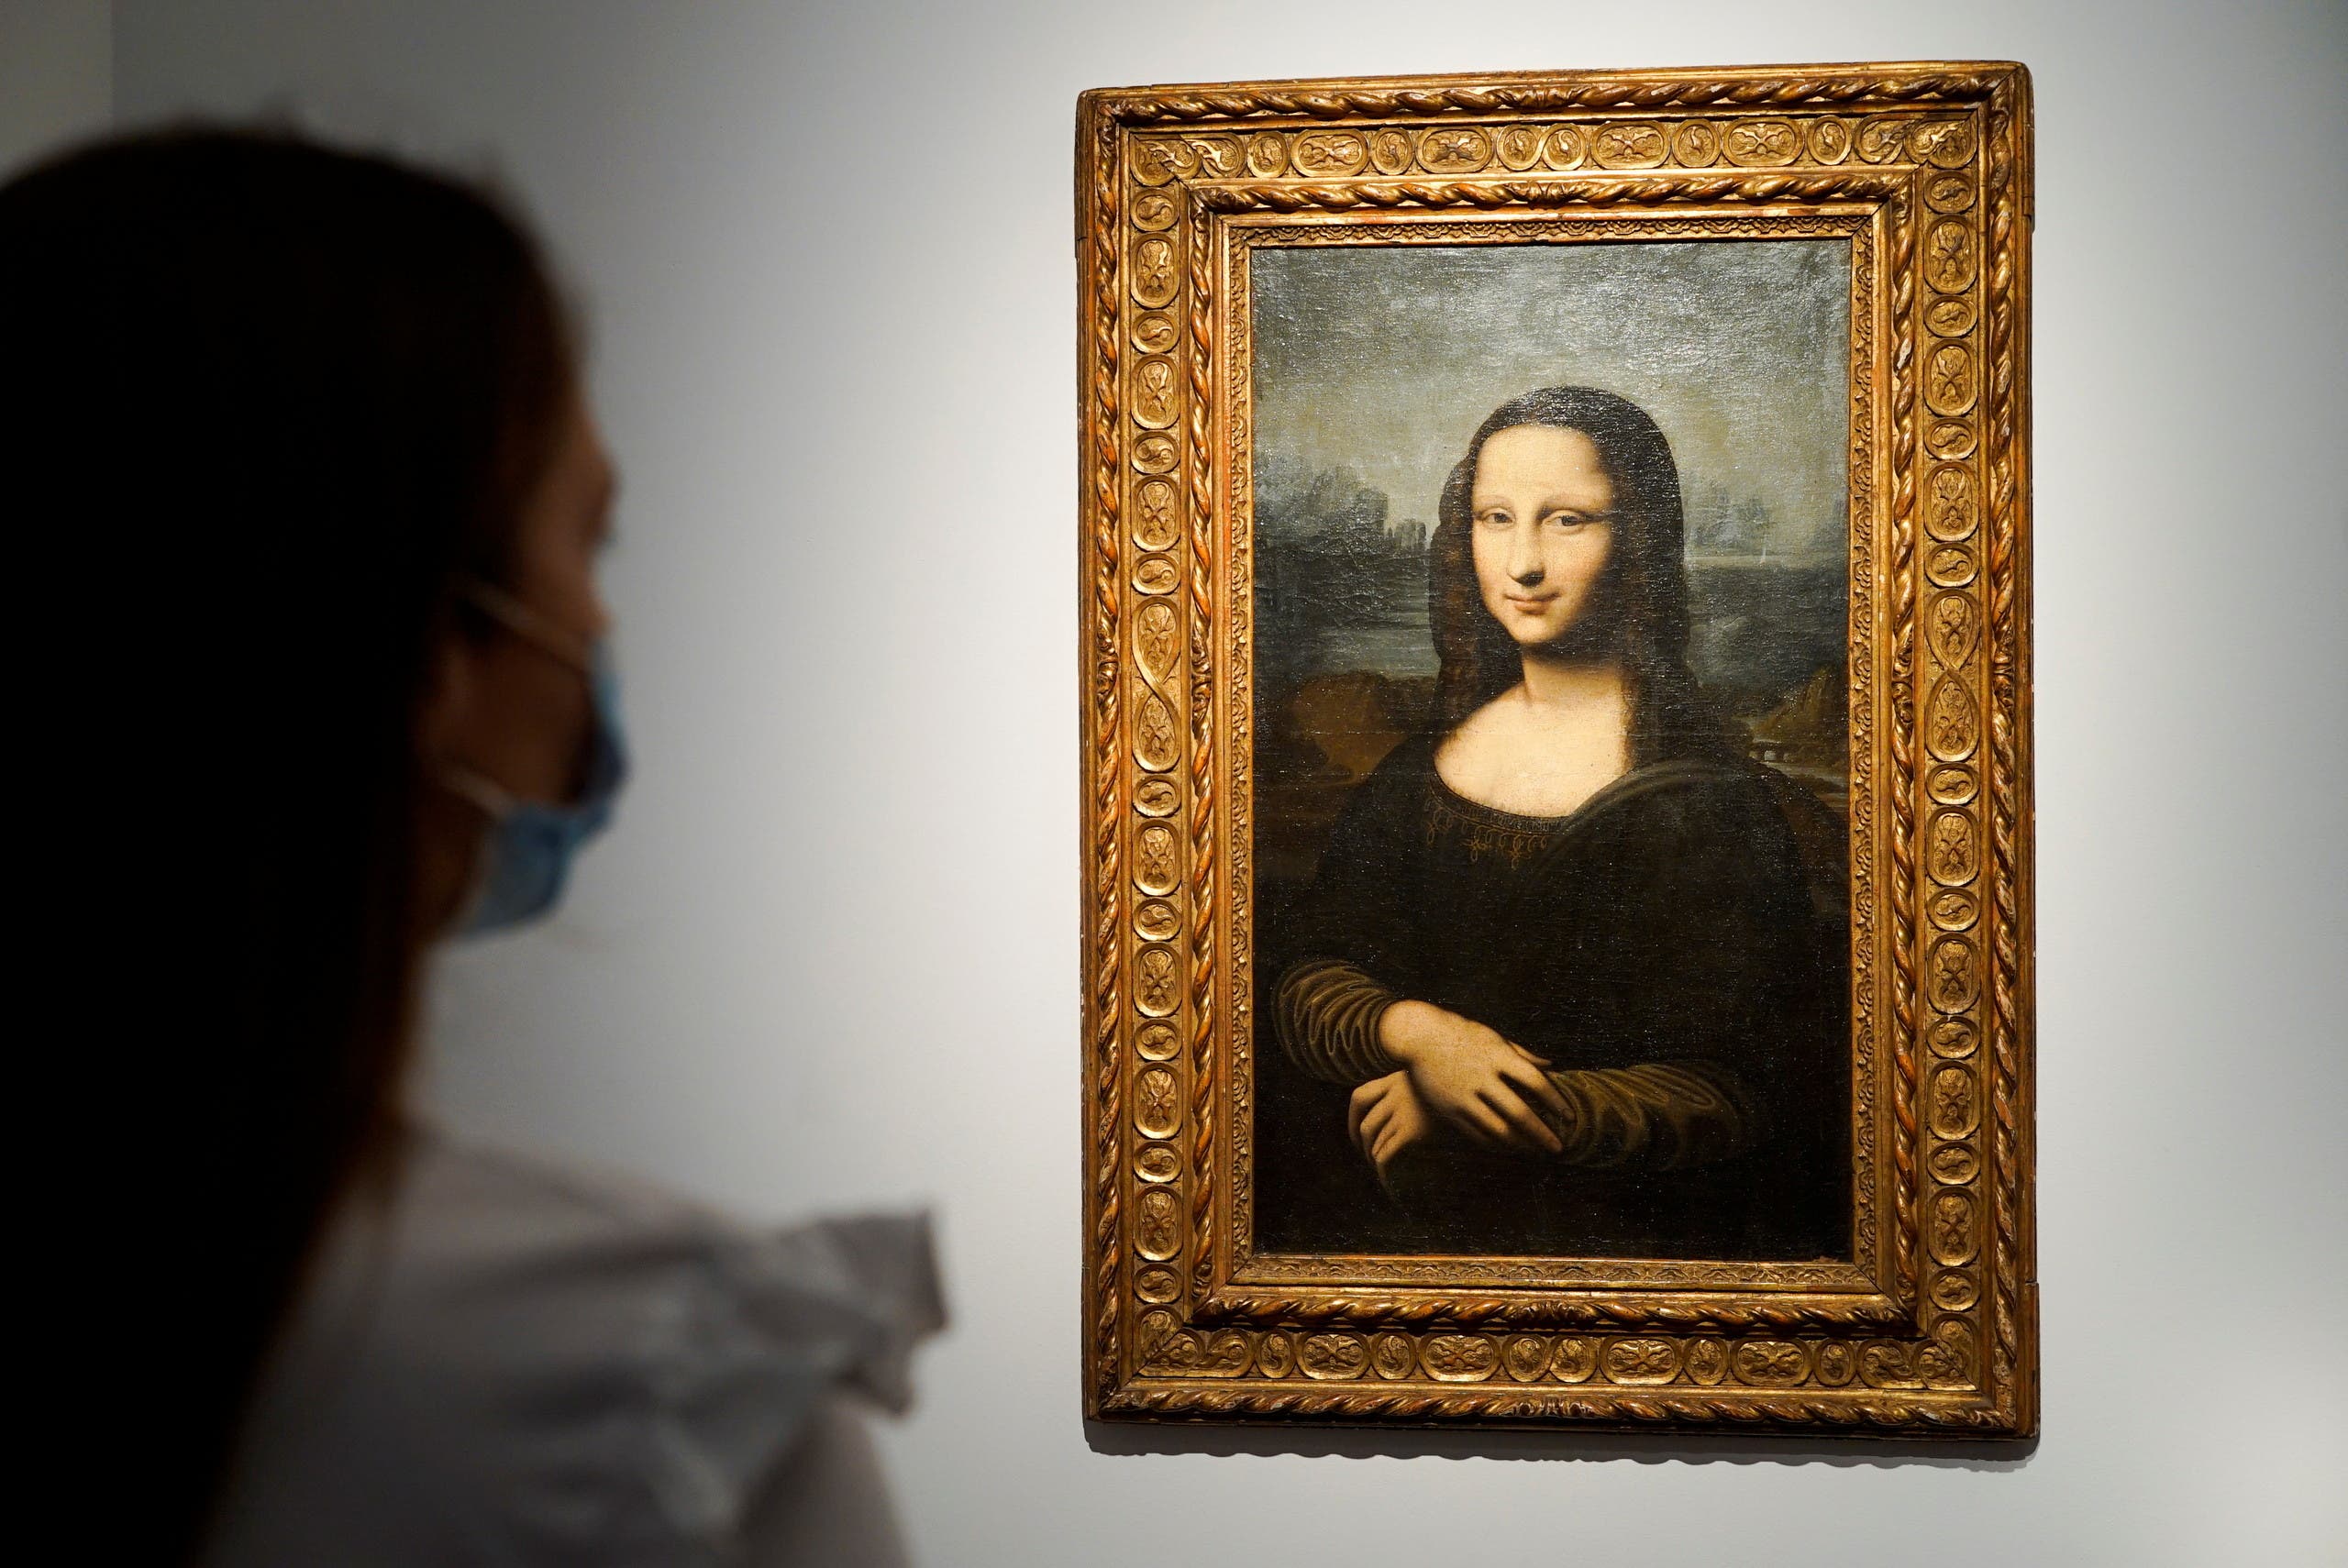 لوحة موناليزا هيكنغ معروضة في دار كريستيز